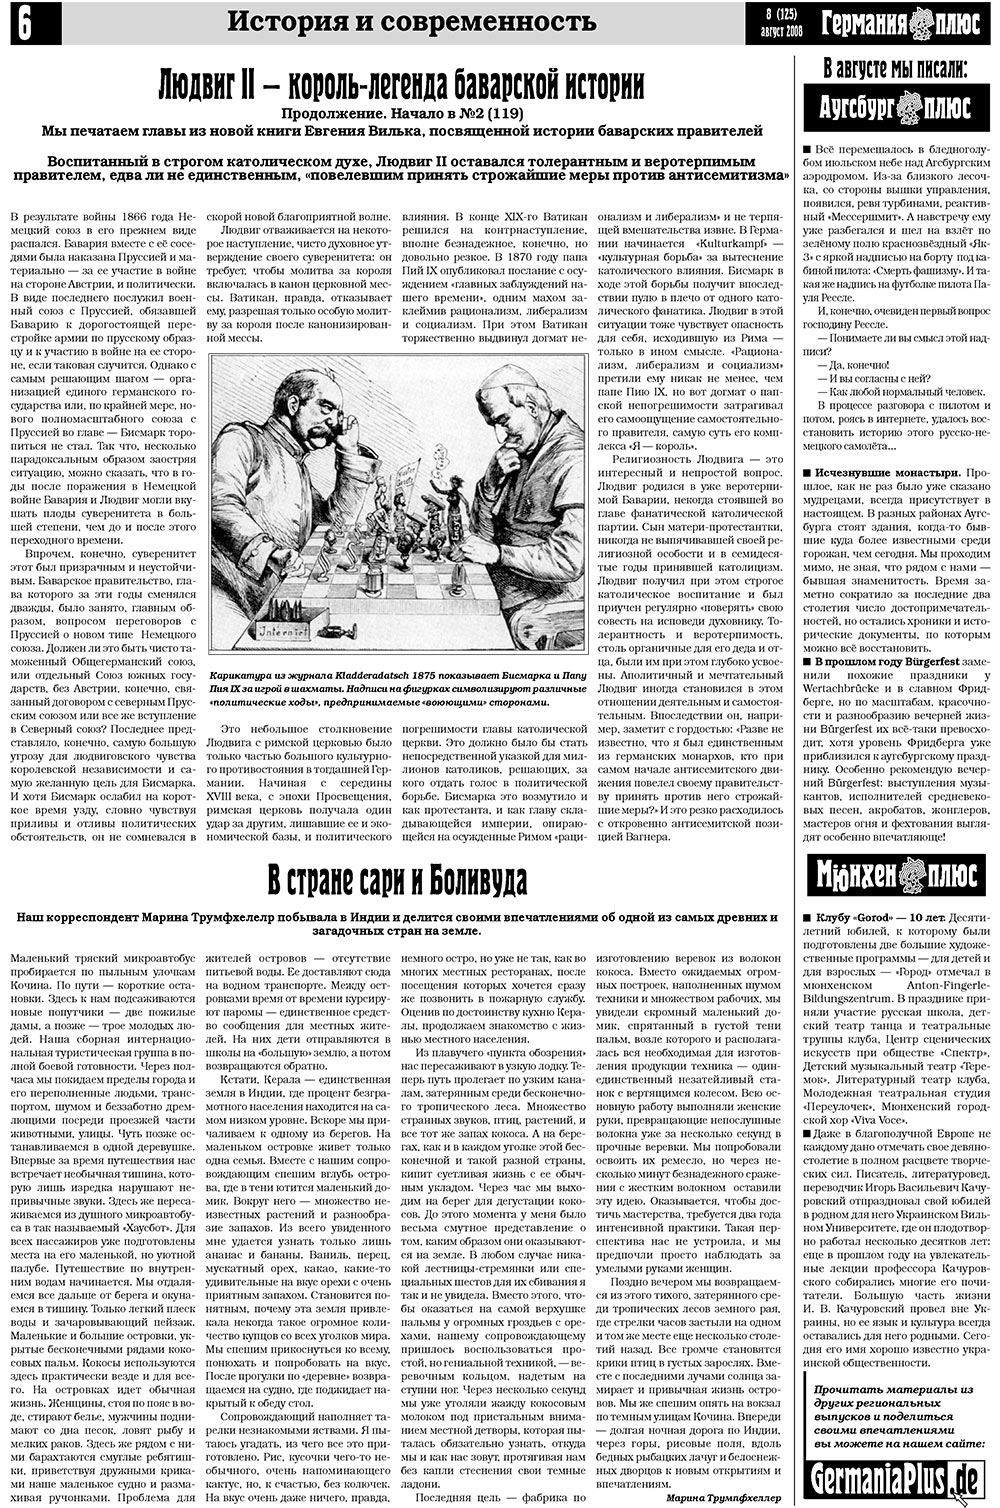 Германия плюс (газета). 2008 год, номер 8, стр. 6